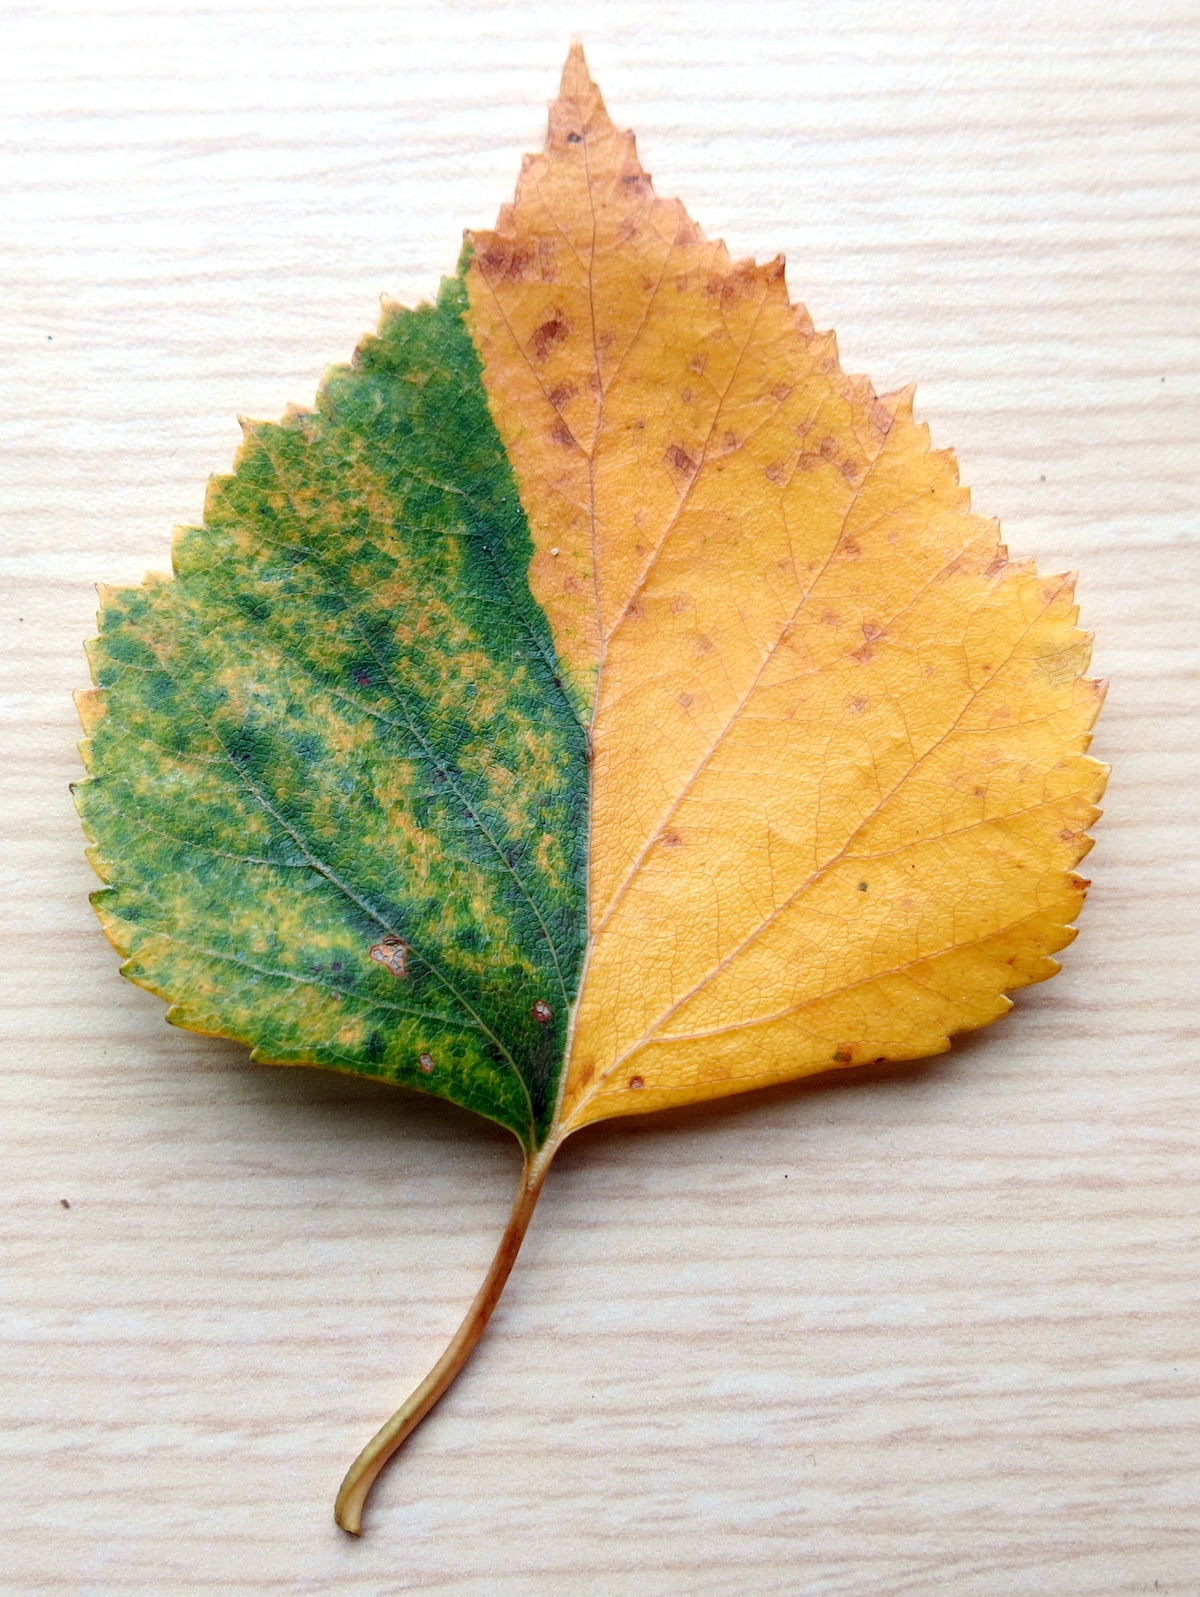 A half-green, half-gold birch leaf lies on a white background.